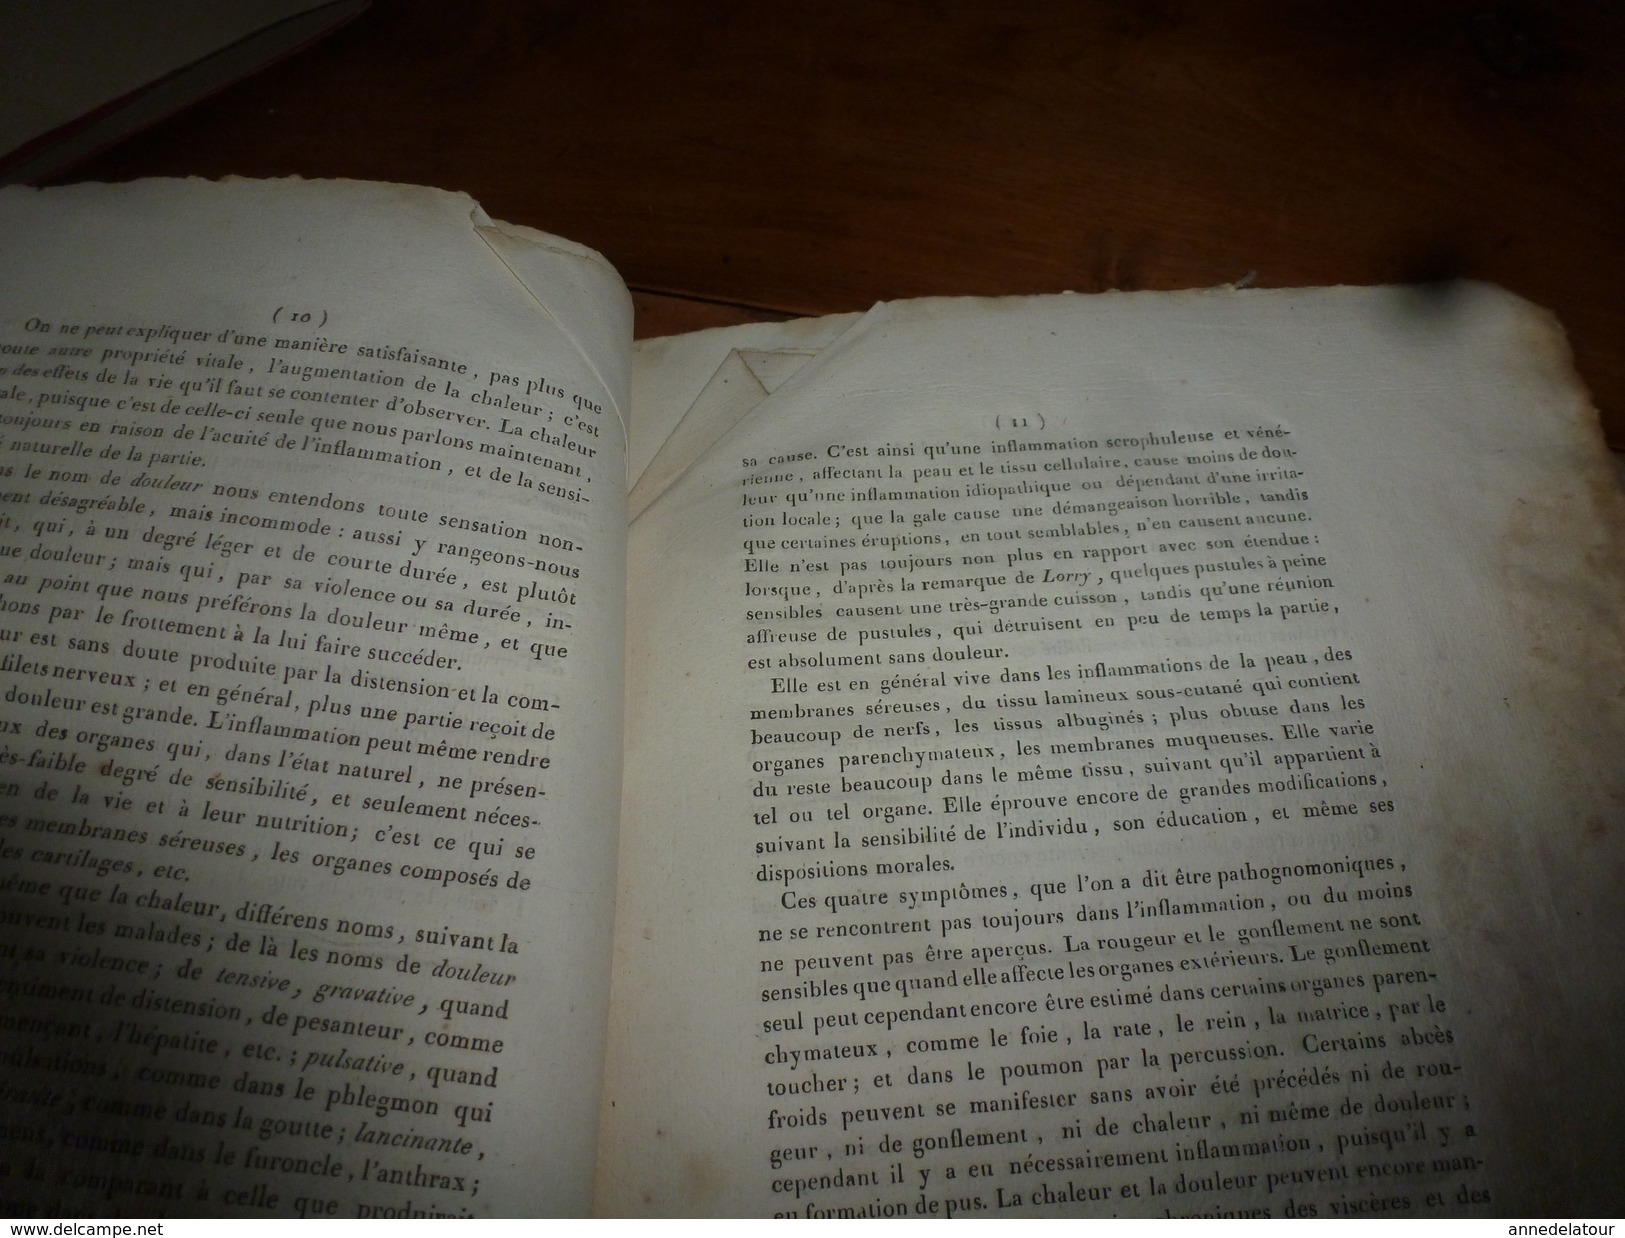 1819 (filigrane)  Rare thèse Dr J. E. Carion SUR L'INFLAMMATION EN GENERAL, présentée à Faculté de Médecine de Paris.